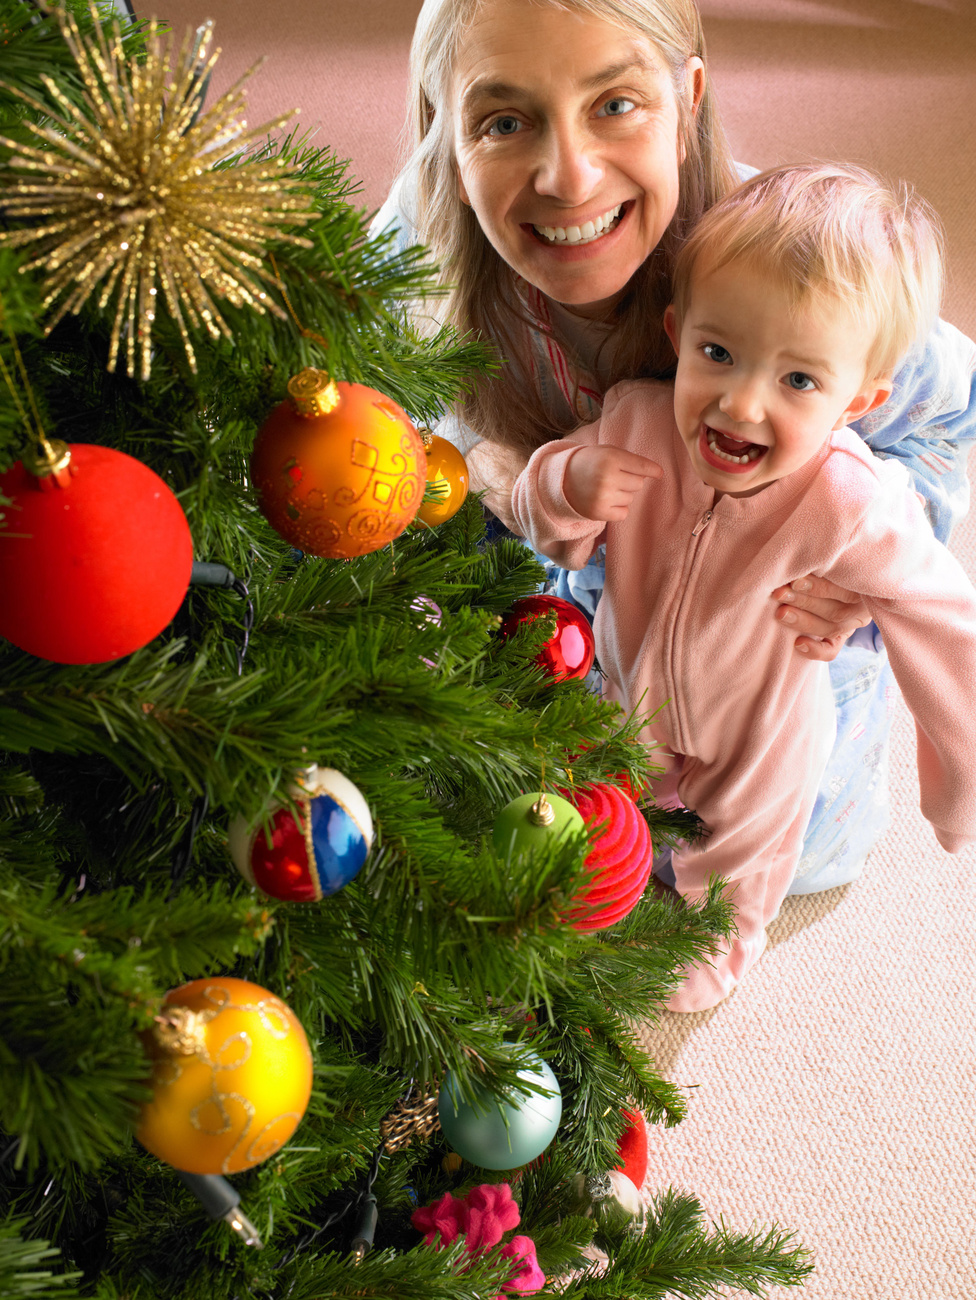 És még egy tipp: amennyiben meghitt hangulatú, családi karácsonyi képeket szeretne készíteni, akkor fotózzon, amikor szerettei otthon vannak.